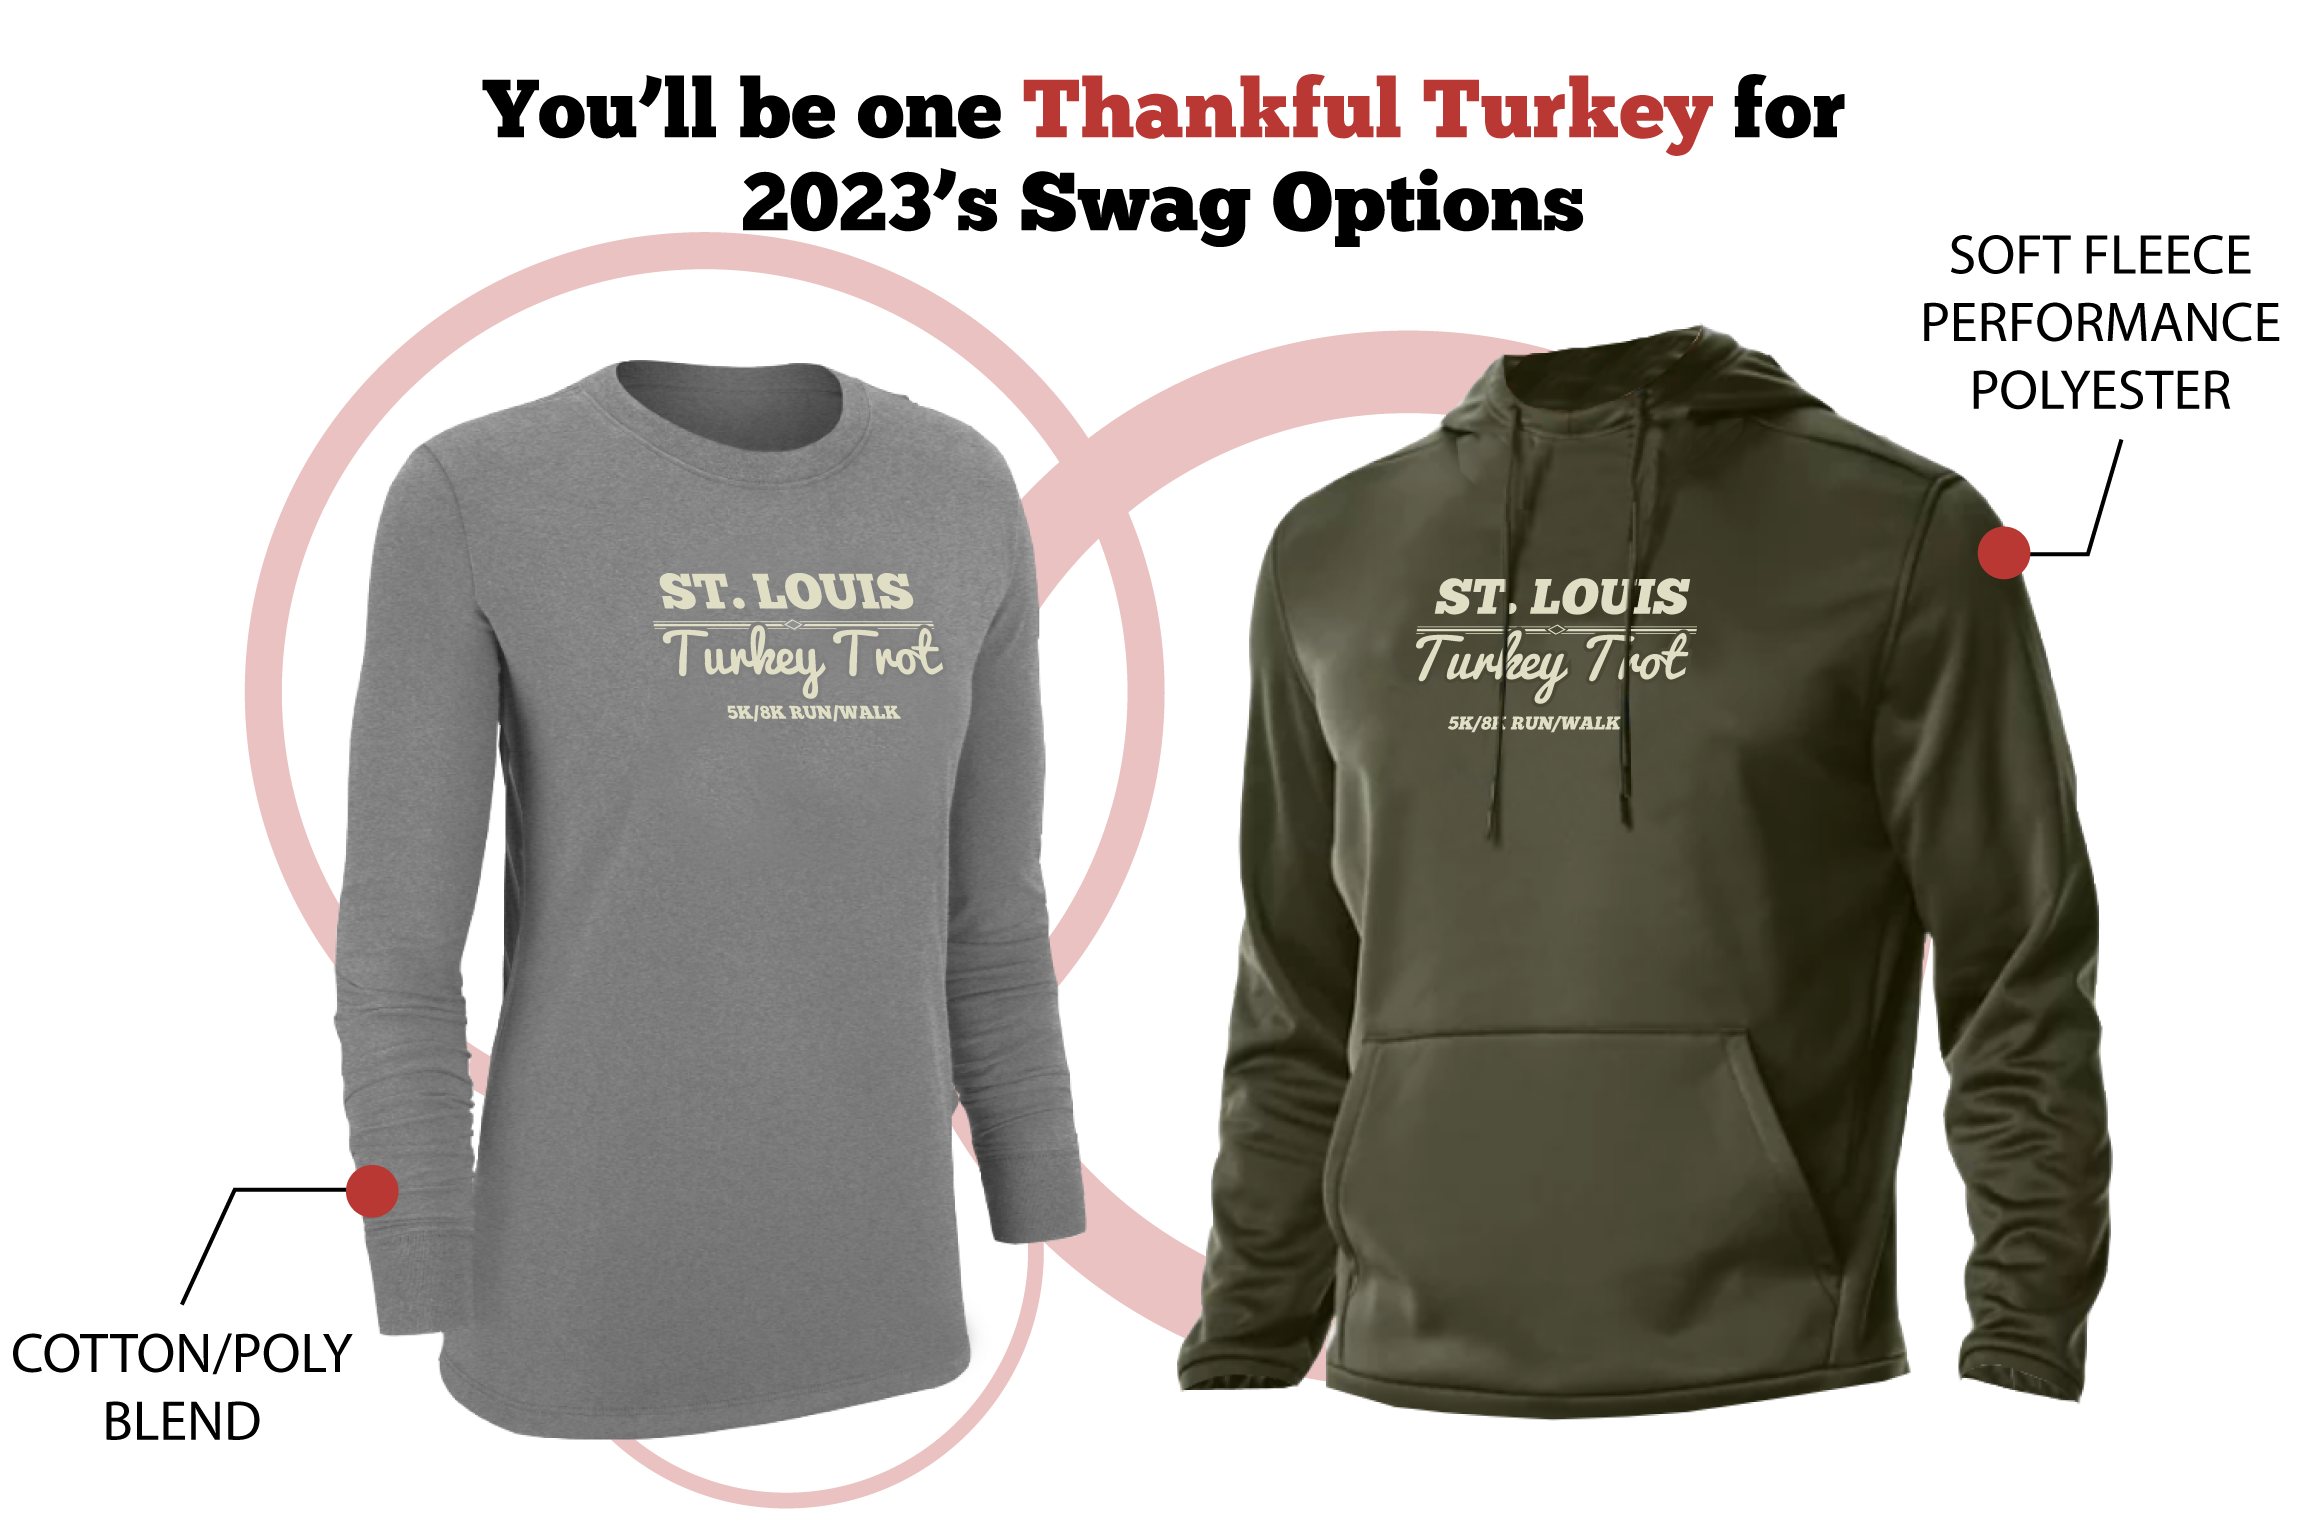 St. Louis Turkey Trot